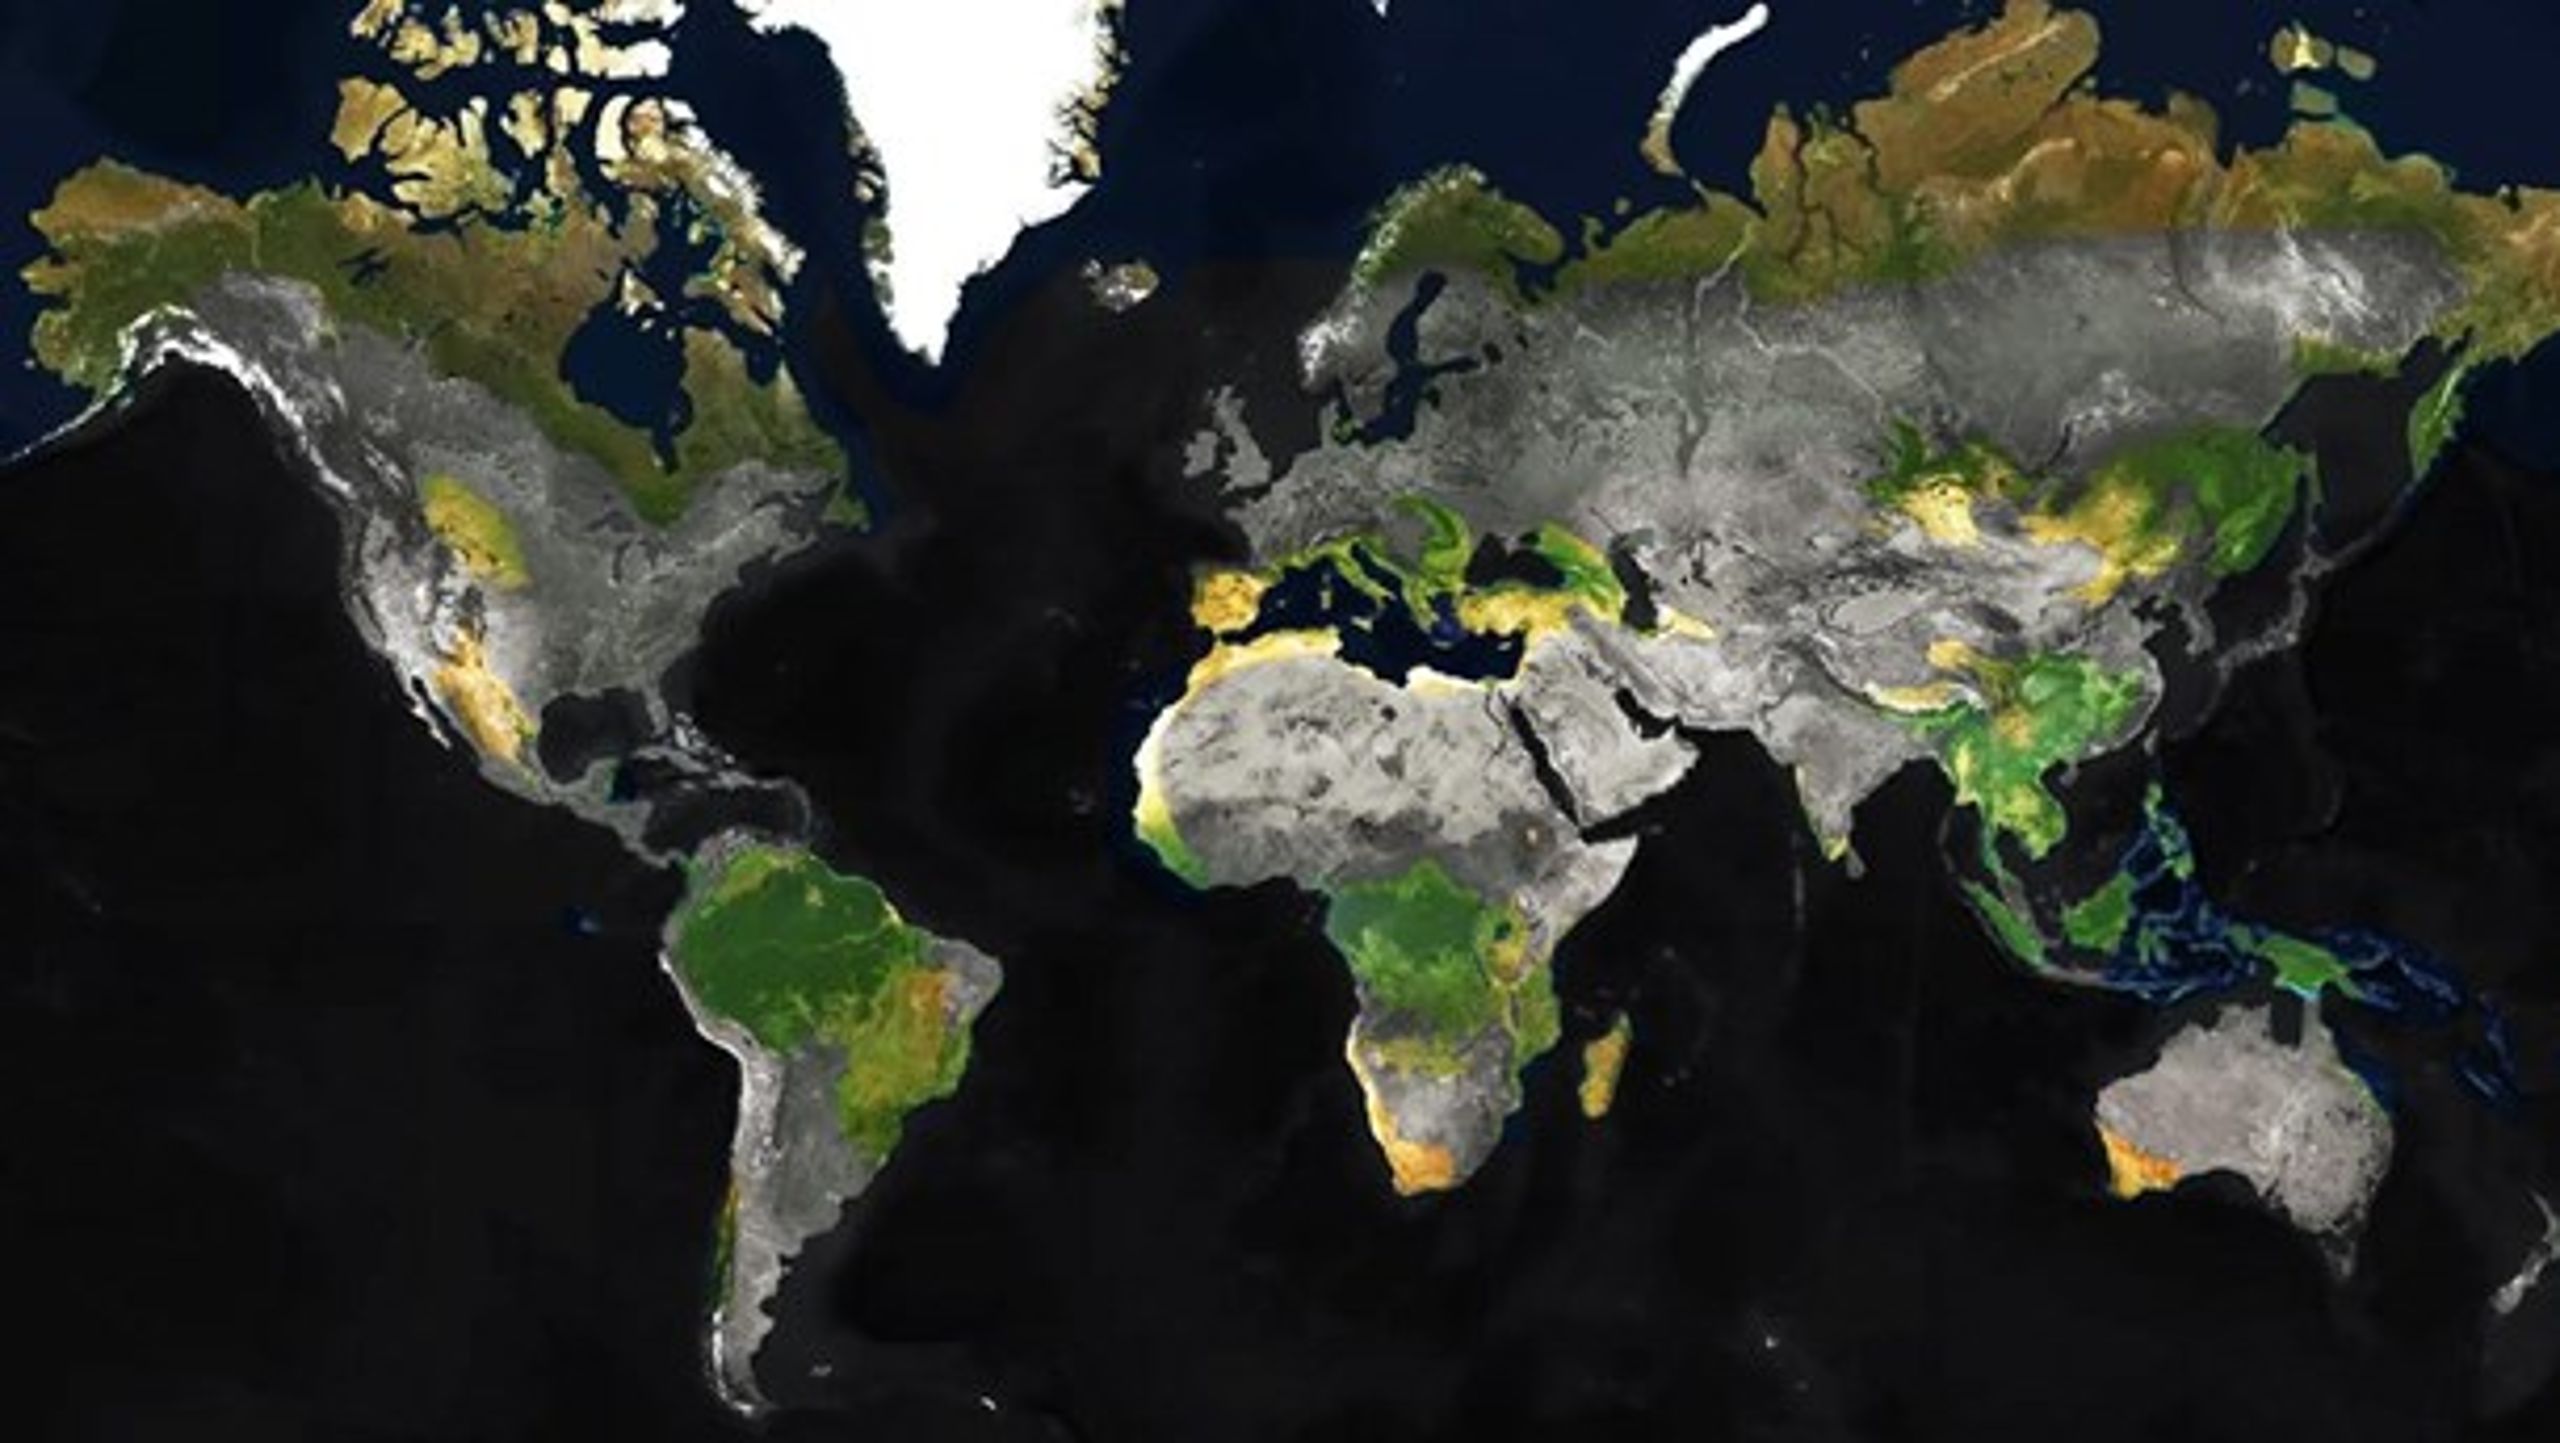 Kartet er en visuel fortolkning af WWFs kart over de viktigste biodiversitets-hotspots i verden.